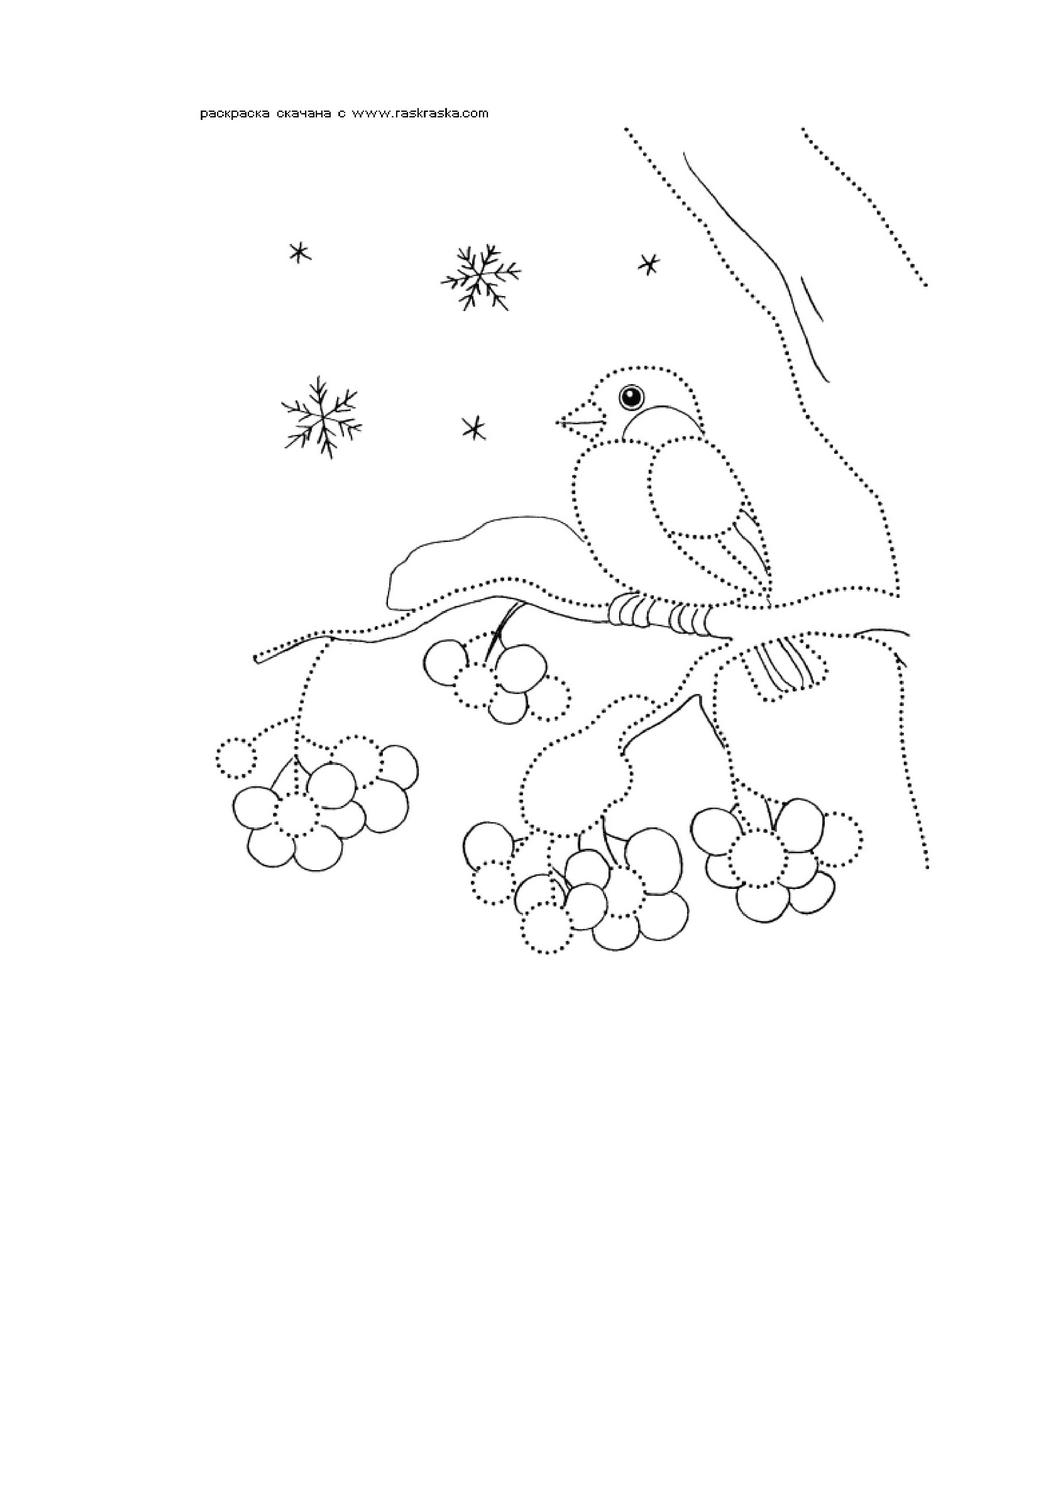 Раскраска снегирь на ветке рябины (63 фото) - фото - картинки и рисунки: скачать бесплатно